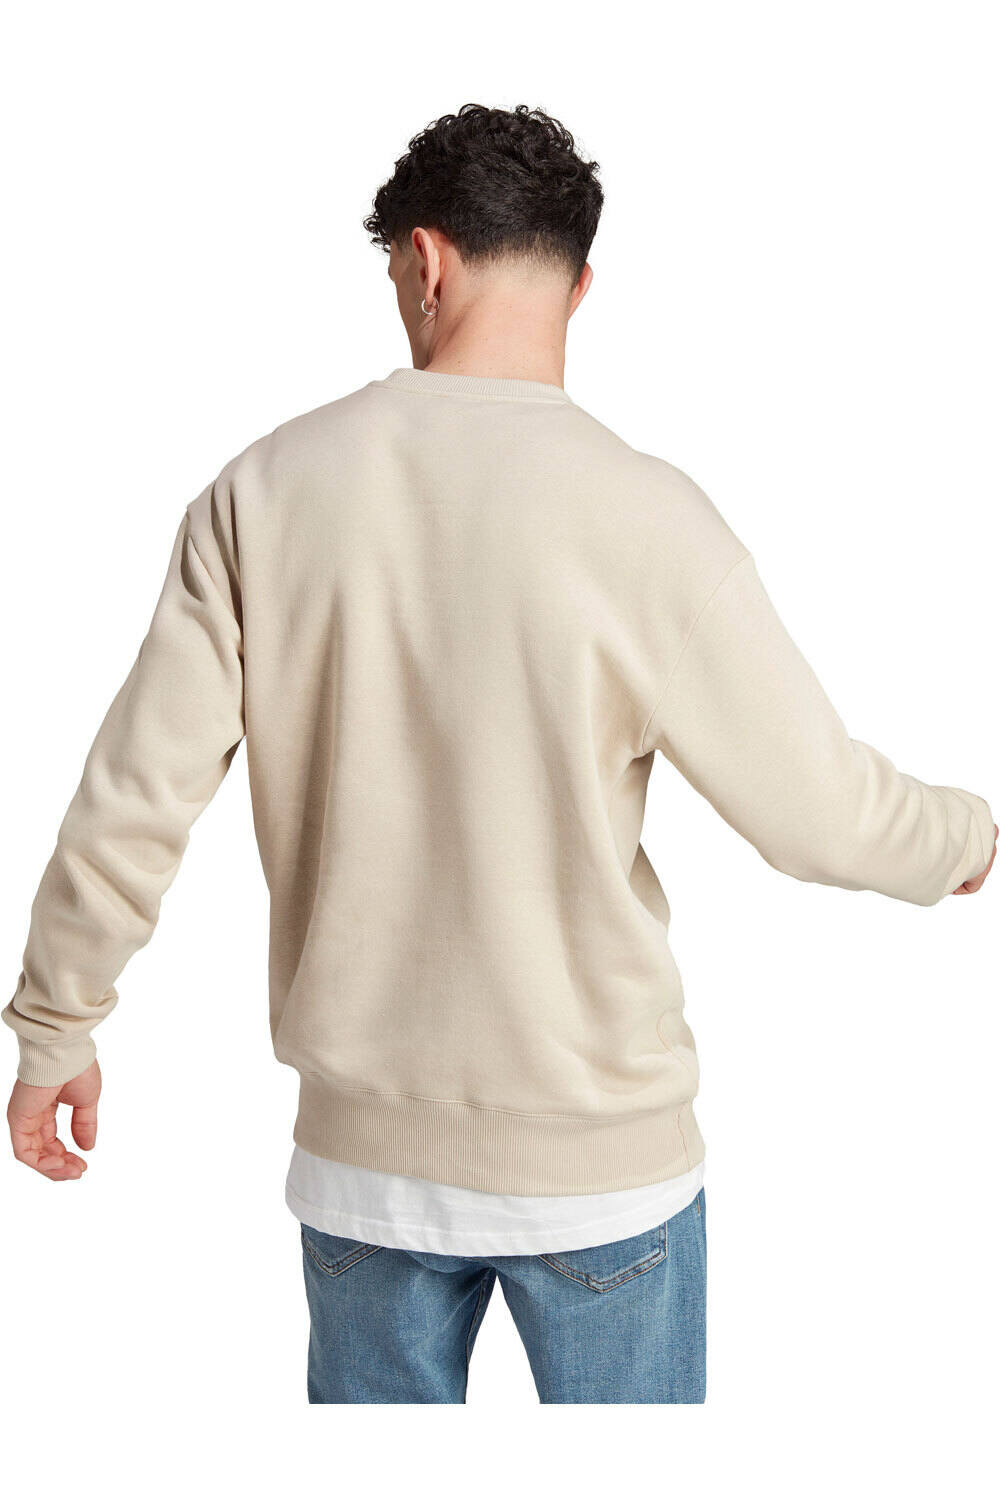 Adidas All SZN Fleece Sweatshirt wonder beige (IP8351) - Jerséis hombre